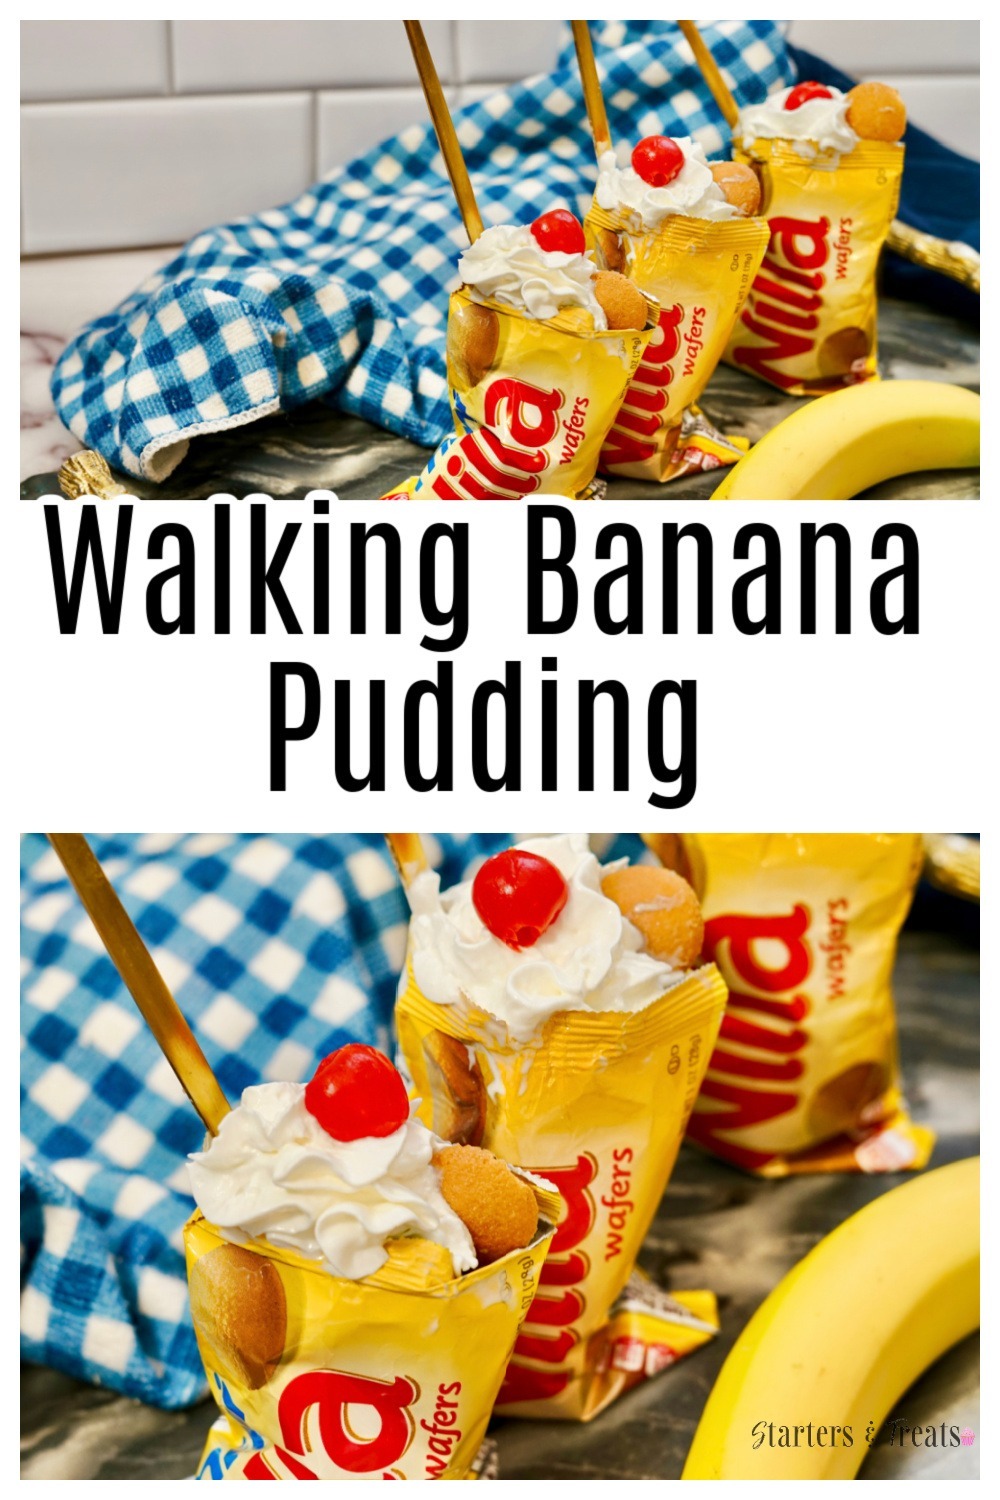 Walking Banana Pudding